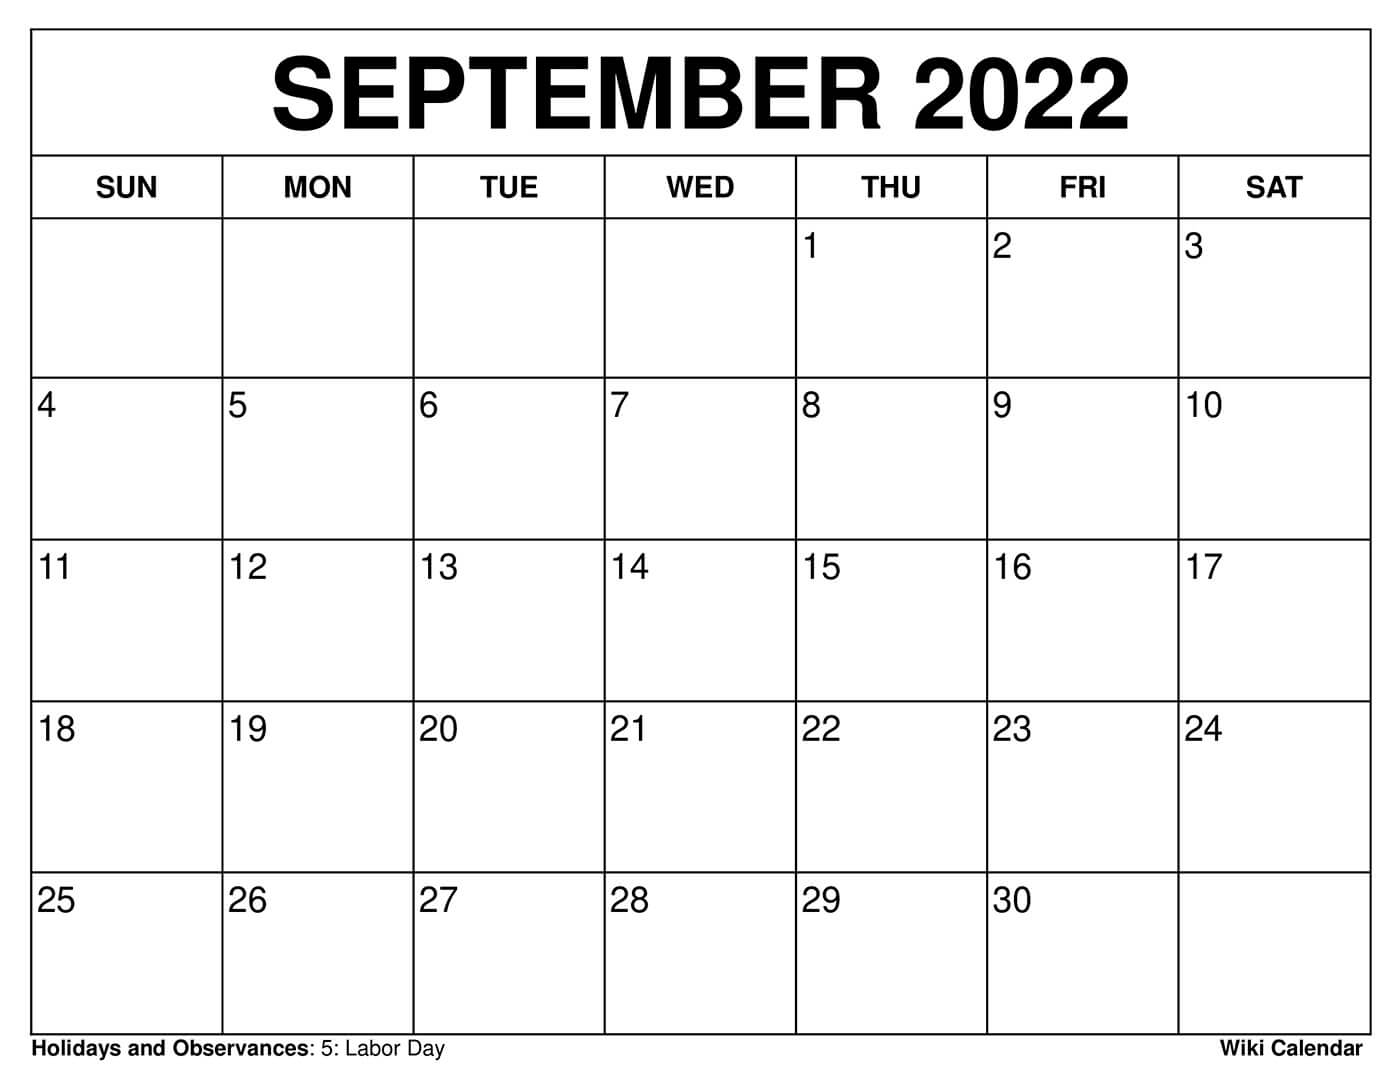 September Calendar For 2022 Free Printable September 2022 Calendars - Wiki Calendar